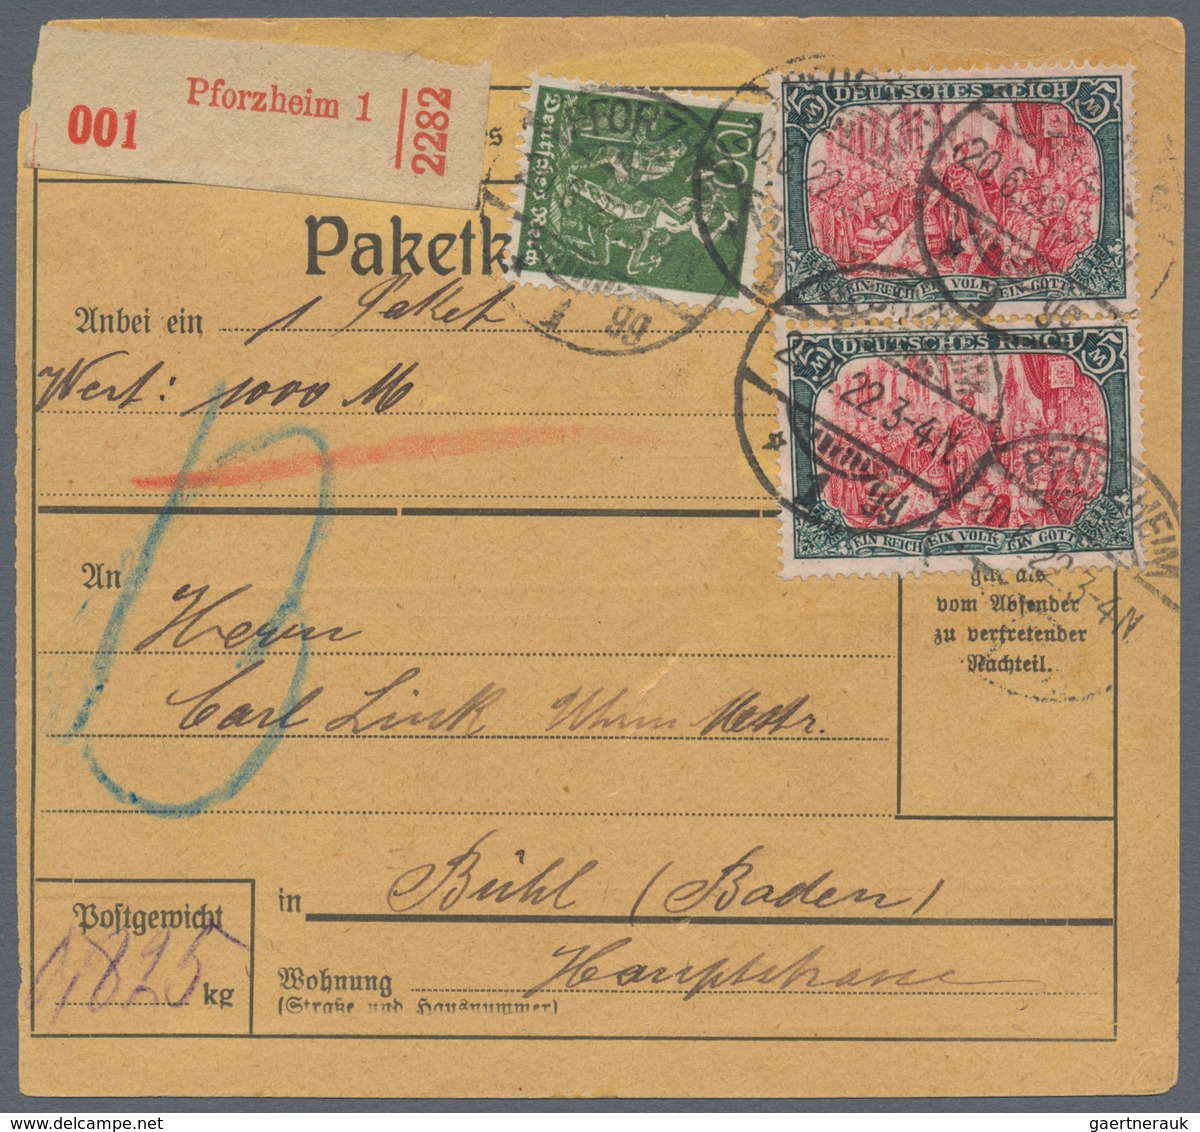 Deutsches Reich: 1872/1920, vielseitiger Bestand von ca. 330 Briefen und Karten, dabei einige nette